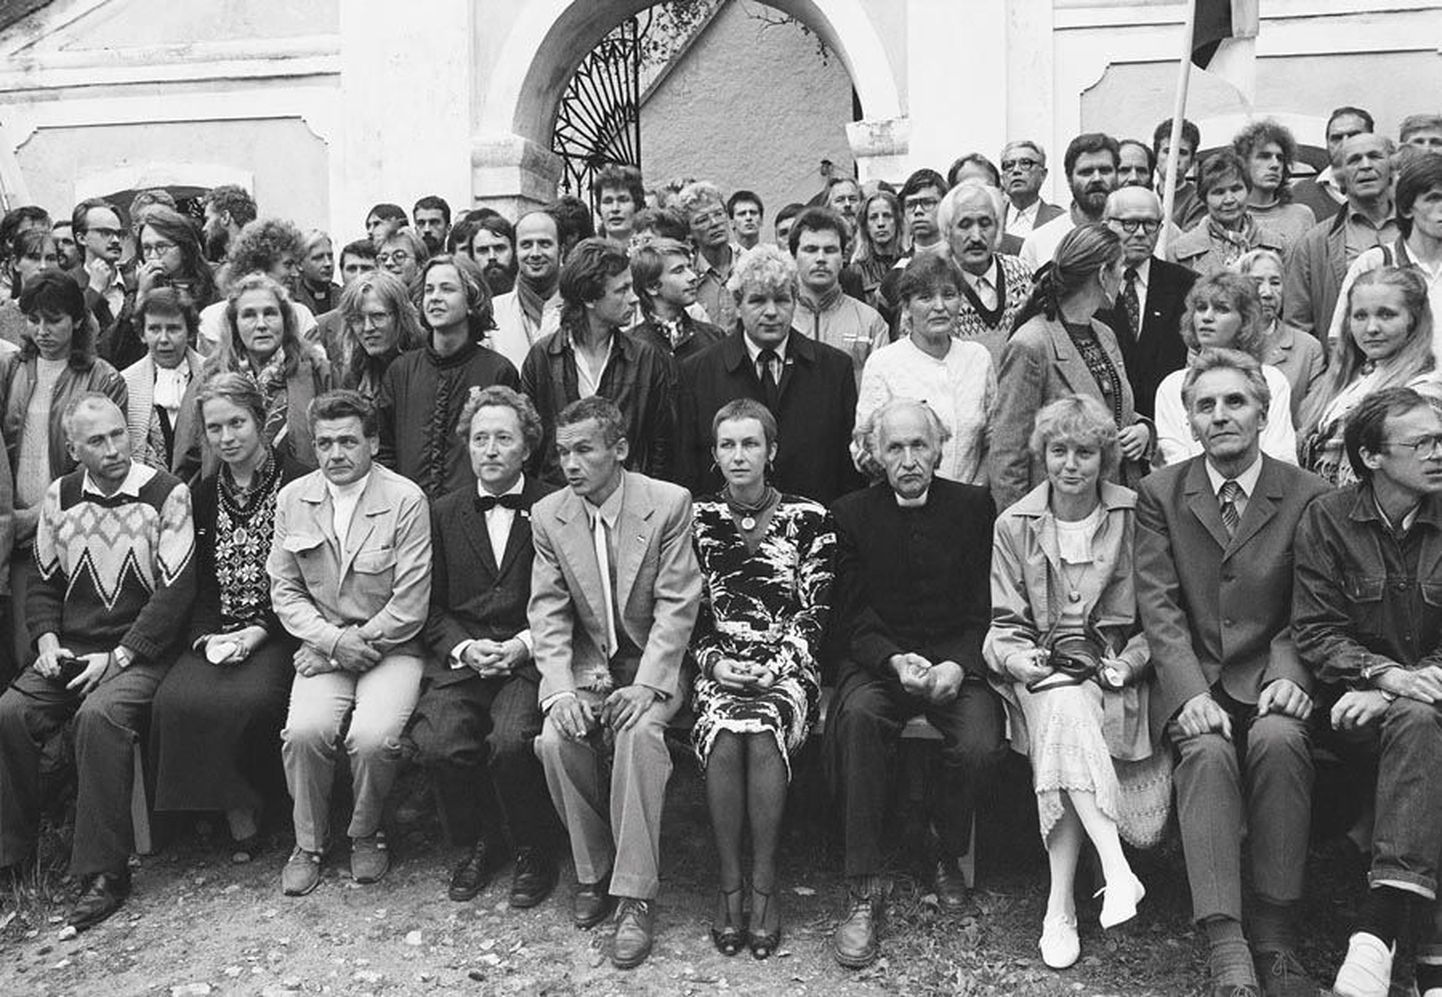 Fotole on jäädvustatud 1988. aasta 20. augustil Eesti Rahvusliku Sõltumatuse Partei asutamiskongressil osalenud.